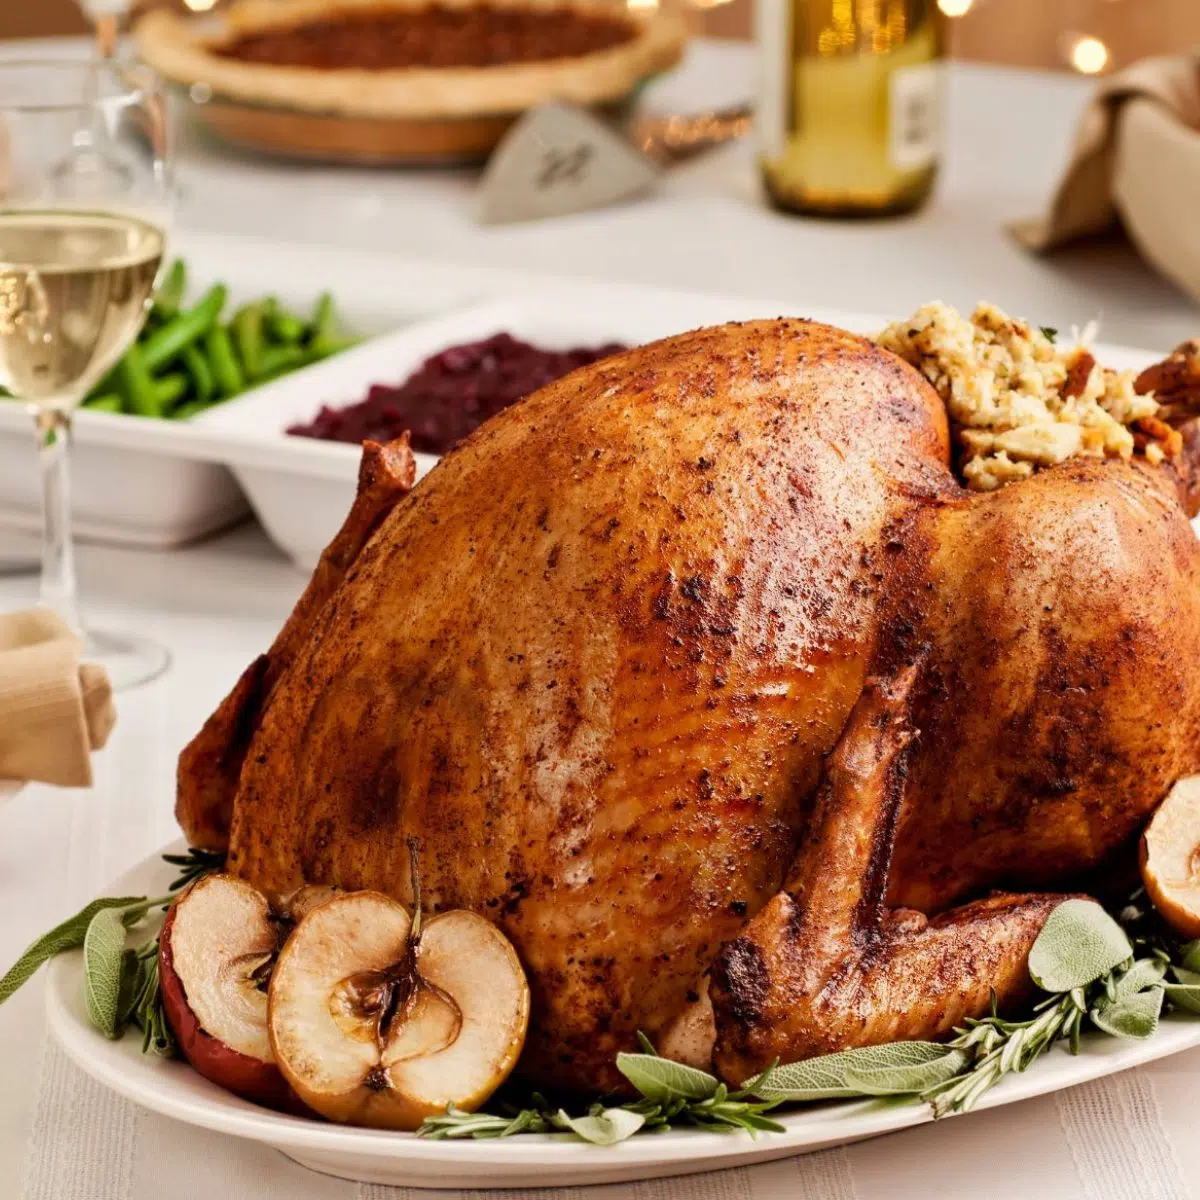 Thanksgiving-Leitfaden zur Menüplanung und Zubereitung von Gerichten im Voraus.